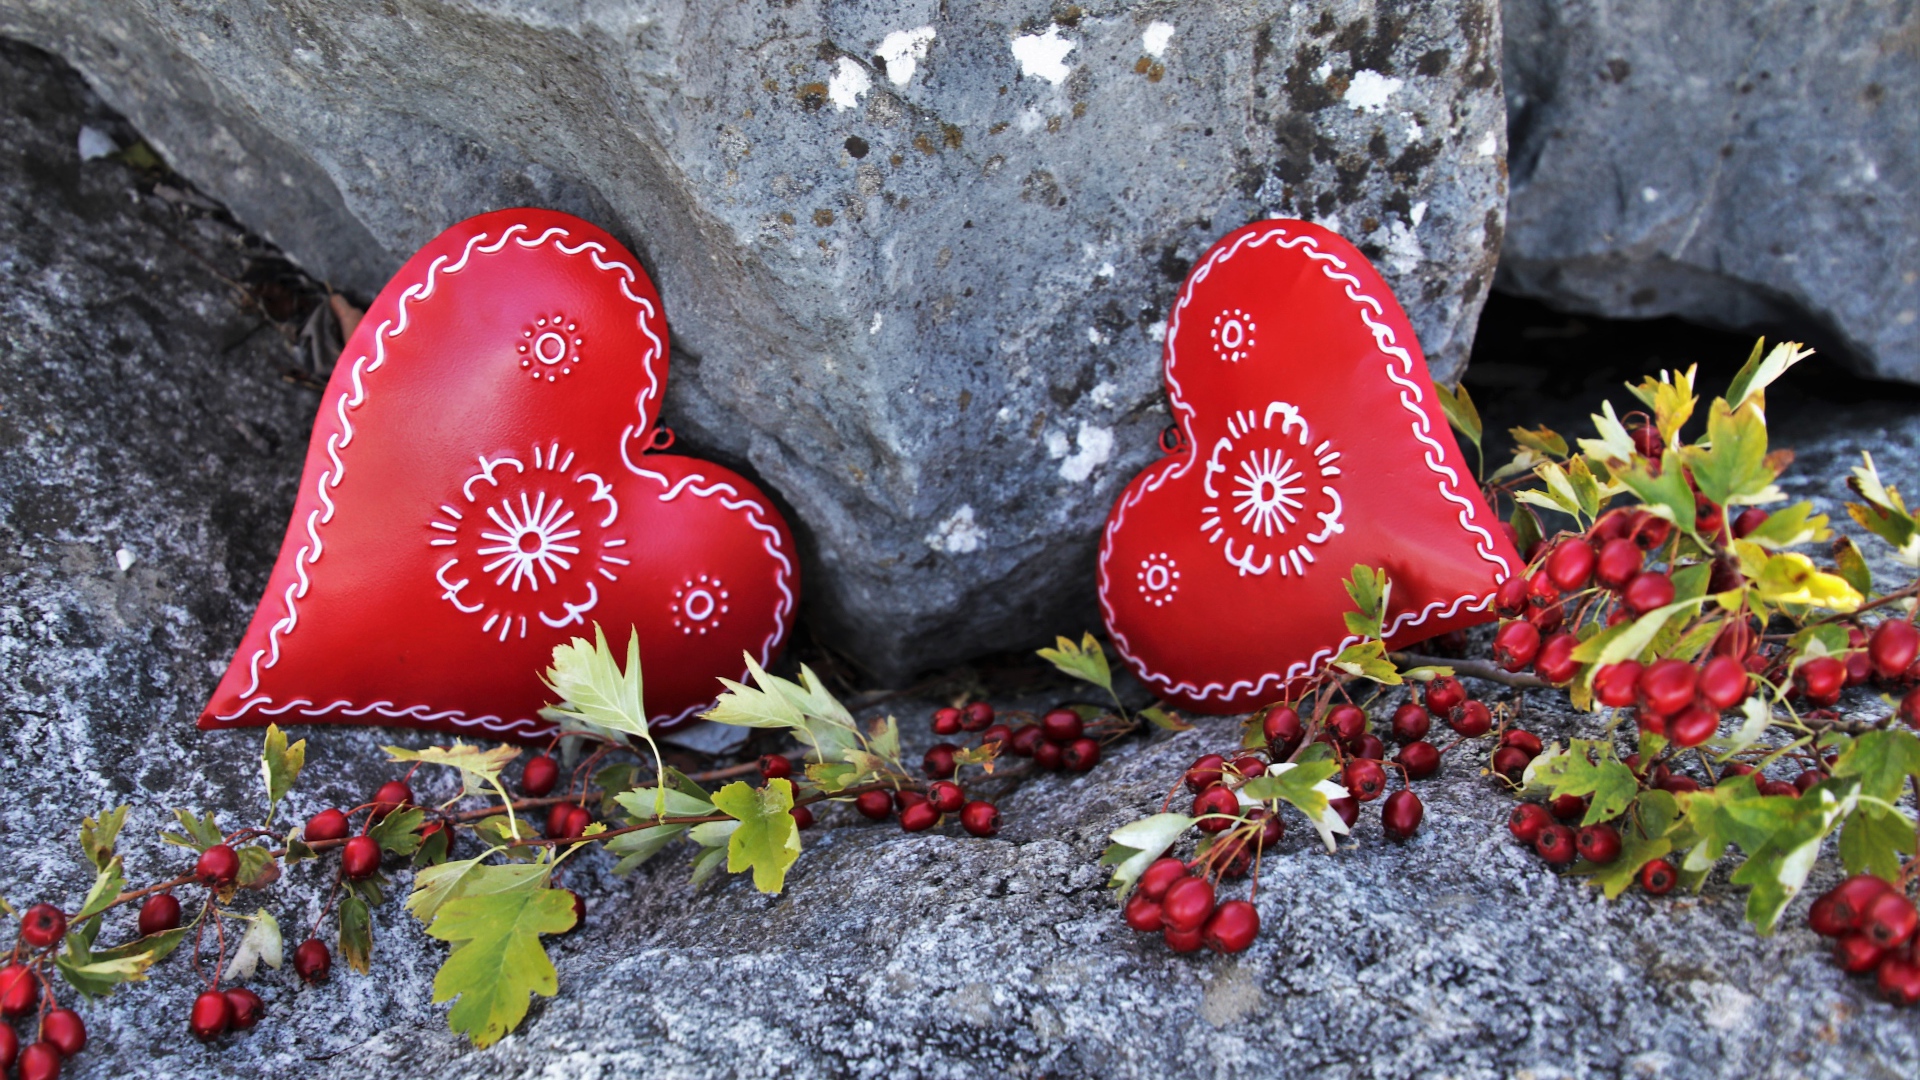 Два сердца лежат у камня с красными ягодами